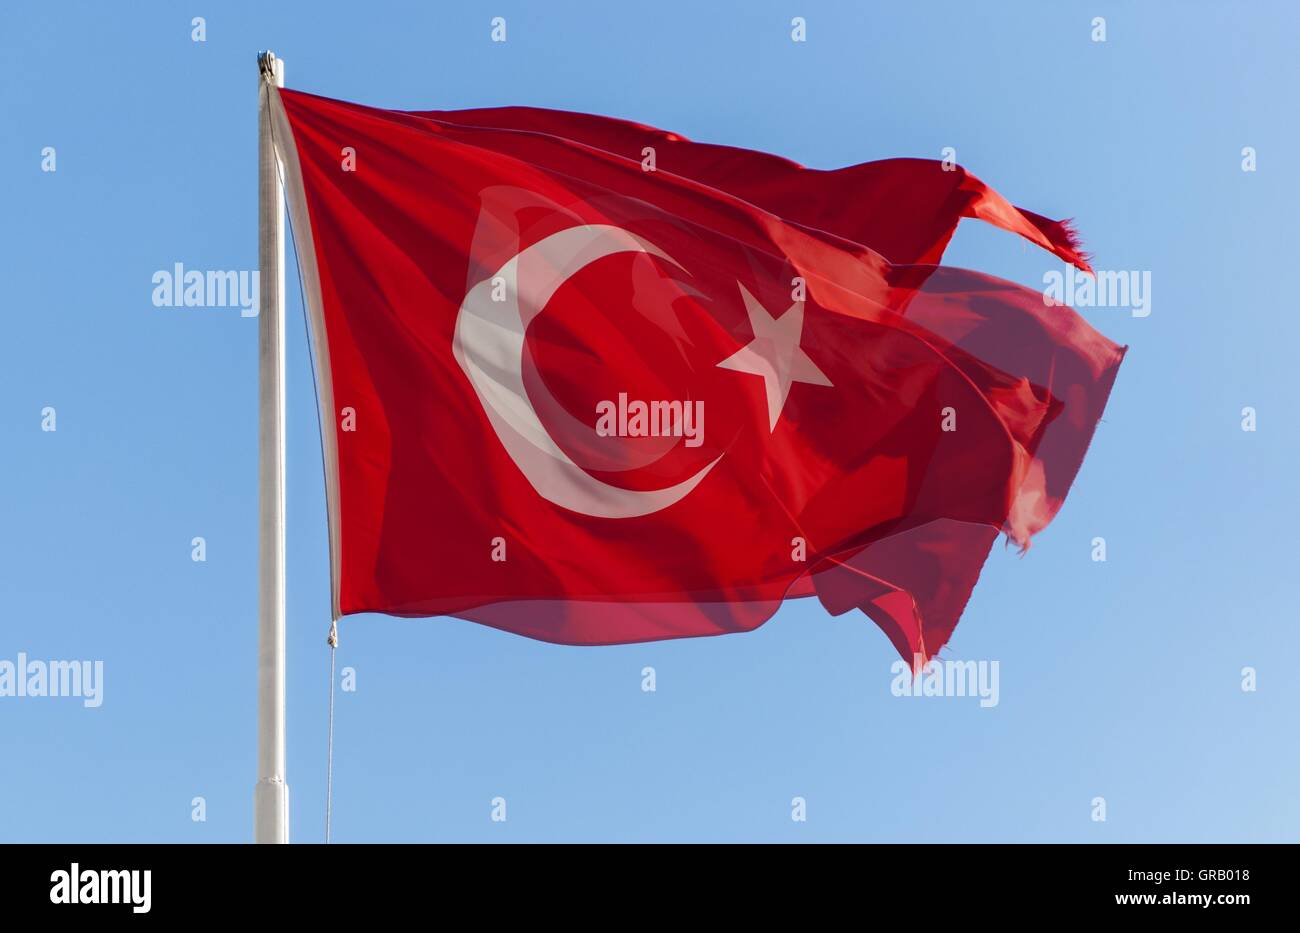 Le drapeau national turc Aliéné Banque D'Images